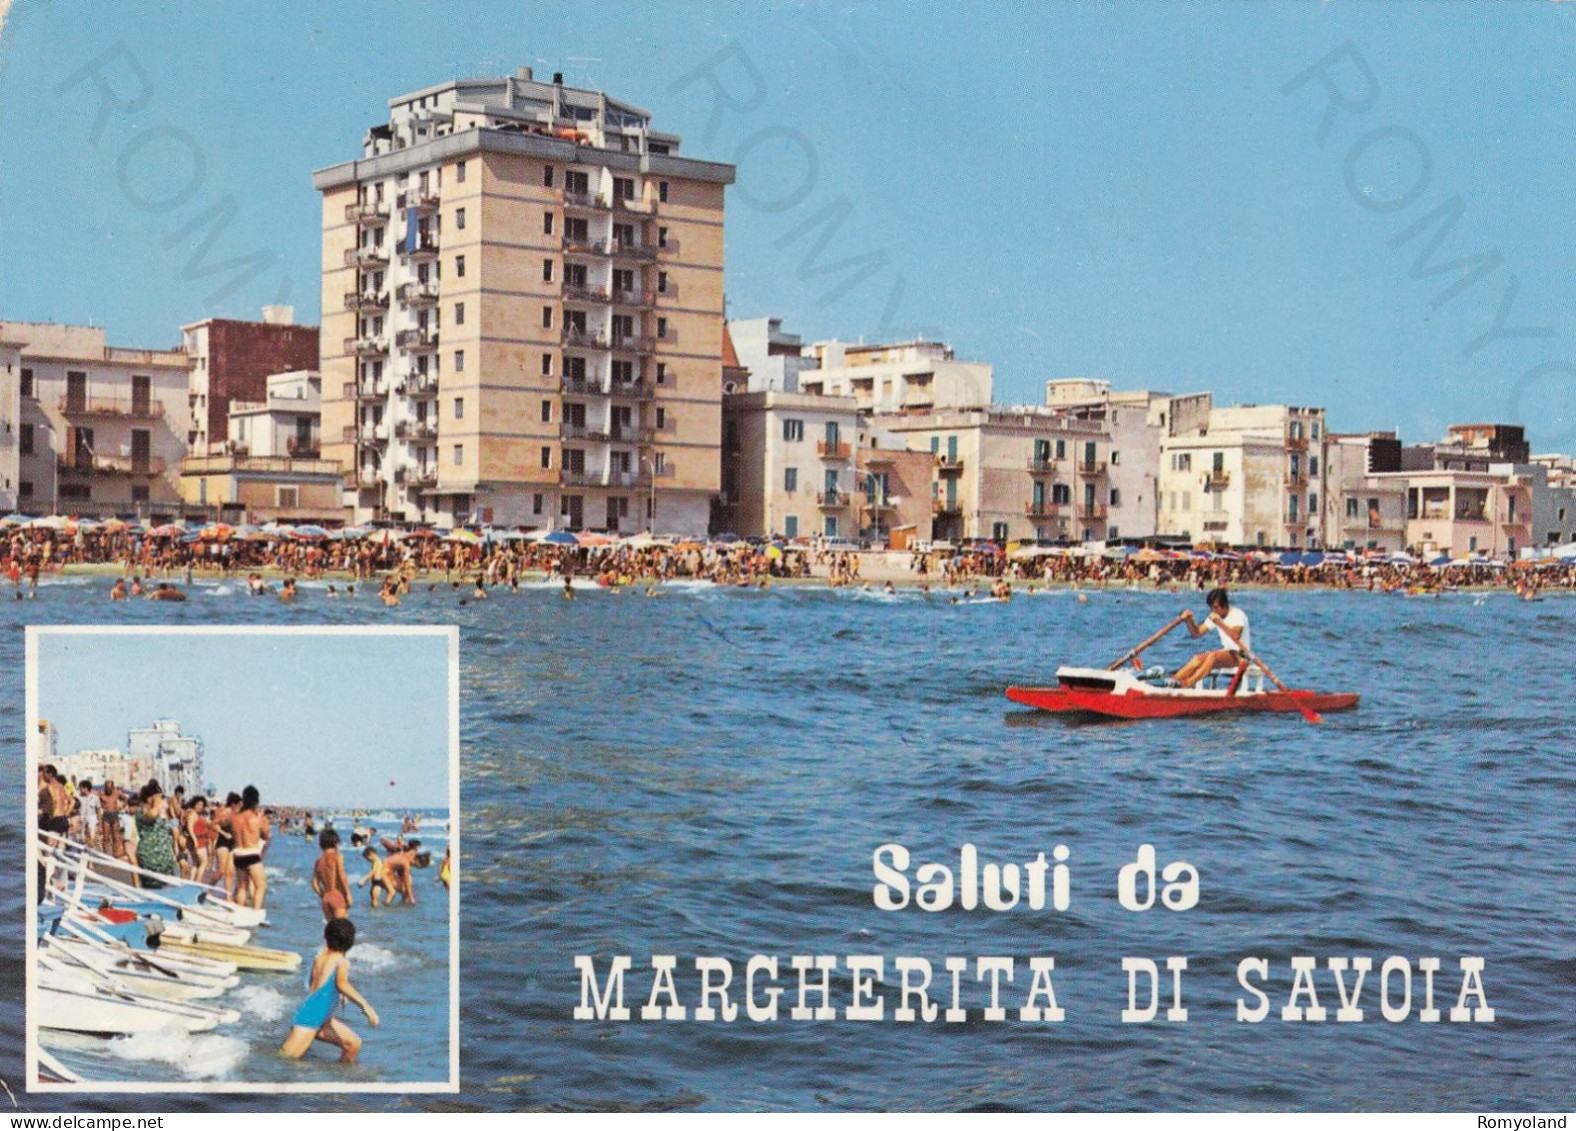 CARTOLINA  MARGHERITA DI SAVOIA,BARLETTA,PUGLIA-SALUTI-SCORCIO PANORAMICO-MARE,SOLE,VACANZA,SPIAGGIA,VIAGGIATA 1976 - Barletta